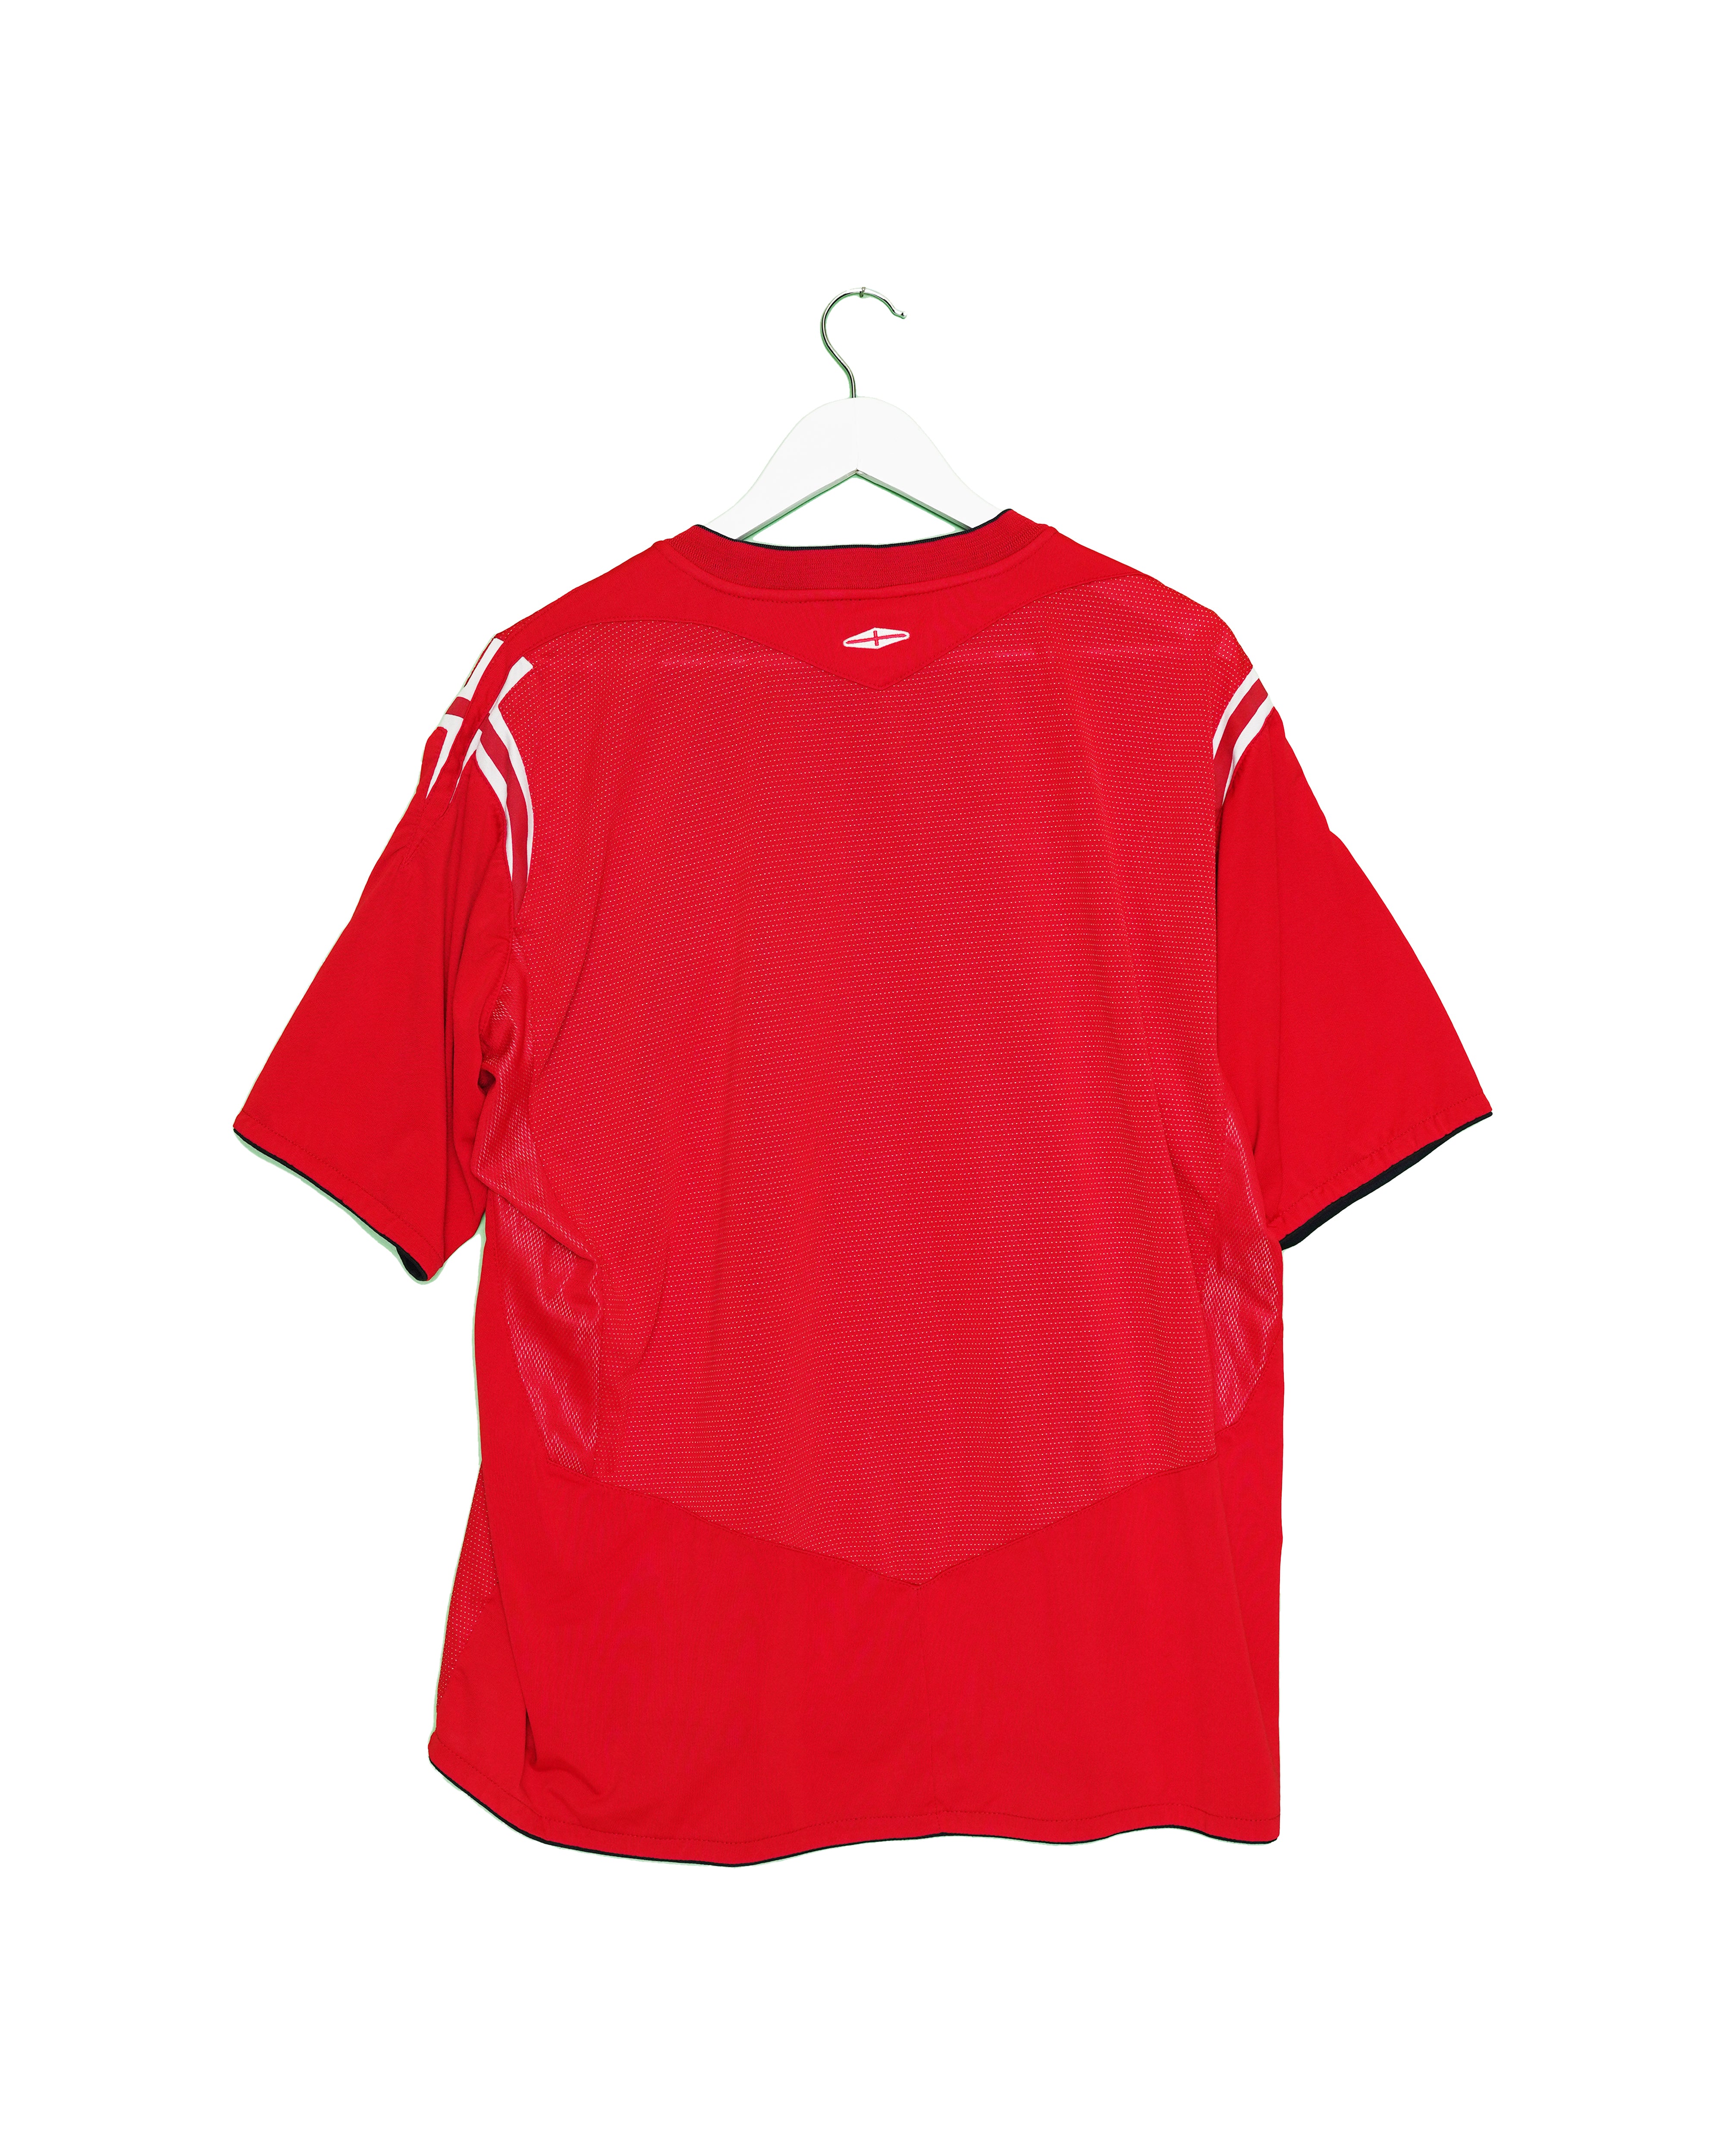 England 2004 Away Shirt - 2XL - #1839